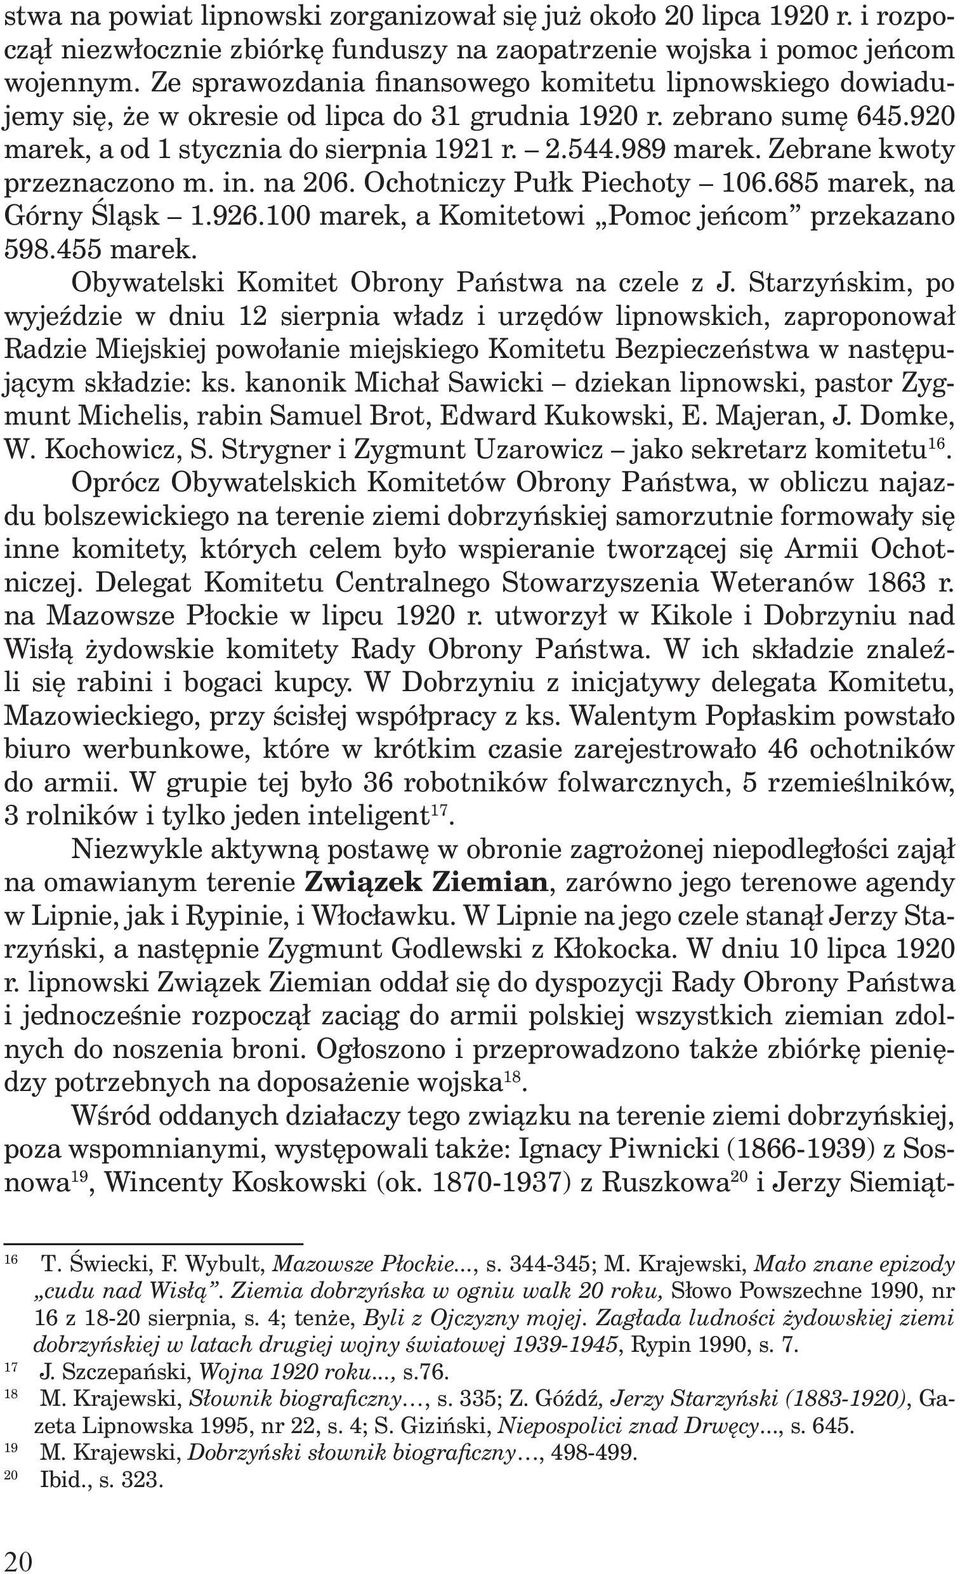 Zebrane kwoty przeznaczono m. in. na 206. Ochotniczy Pułk Piechoty 106.685 marek, na Górny Śląsk 1.926.100 marek, a Komitetowi Pomoc jeńcom przekazano 598.455 marek.